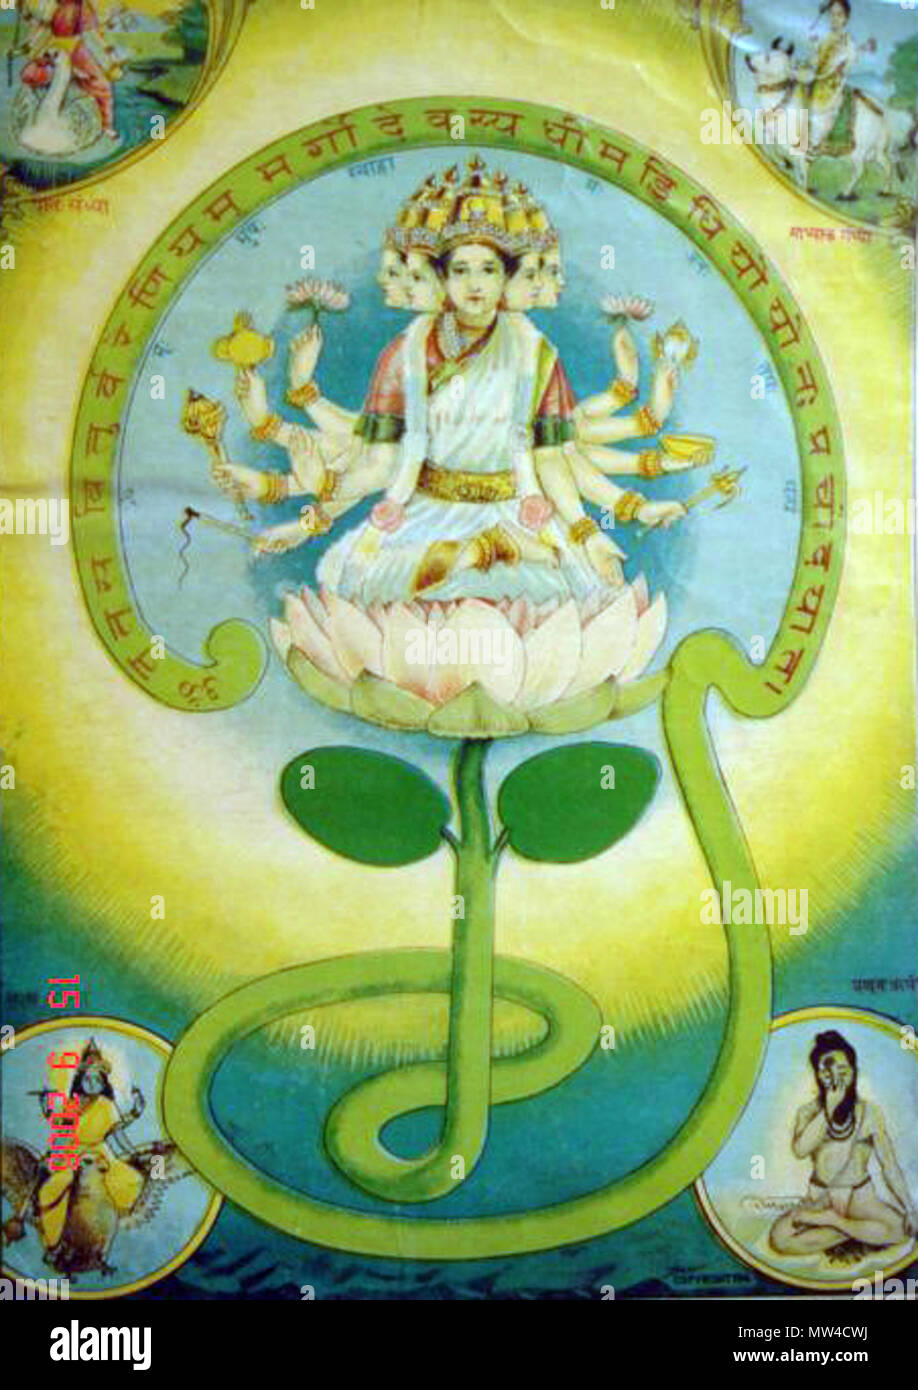 . Deutsch: Das 'Gayatri Mantra" hat sich zu einer Göttin personifiziert worden, obwohl eine relativ undurchsichtig und sehr textualized, fast immer durch ihre Sanskrit Mantras (Basar Kunst, 1910) Quelle: ebay, 07.11.2006, entsprechend der heiligen Texte, die Gayatri ist Brahma begleitet, Gayatri ist Vishnu, Gayatri ist Shiva, Gayatri ist die Veden. Gayatri kam später als eine Göttin personifiziert werden. Sie ist eine Gefährtin von Lord Brahma. Sie ist mit fünf Köpfen gezeigt und ist in der Regel auf einem roten Lotus sitzt - das bedeutet Reichtum. Die vier Köpfe der Gayatri repräsentieren die vier Veden, die fünfte Kopf stellt Die al Stockfoto